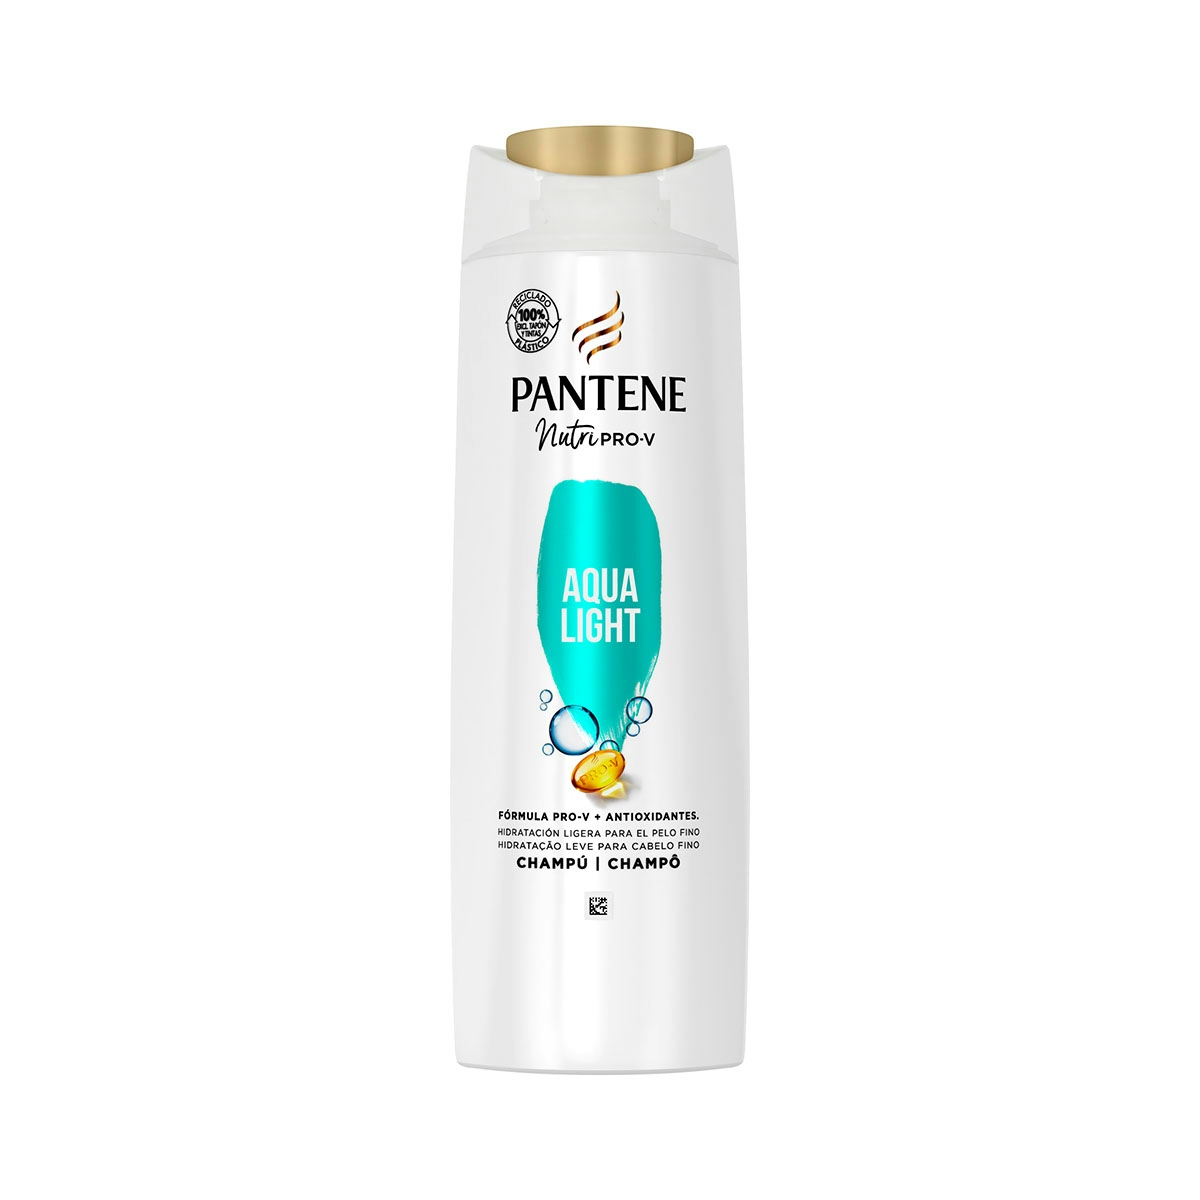 Pantene Champú Aqua Light Nutri Pro-V, fórmula Pro-V + con antioxidantes, hidratación ligera para cabello fino, 400 ML